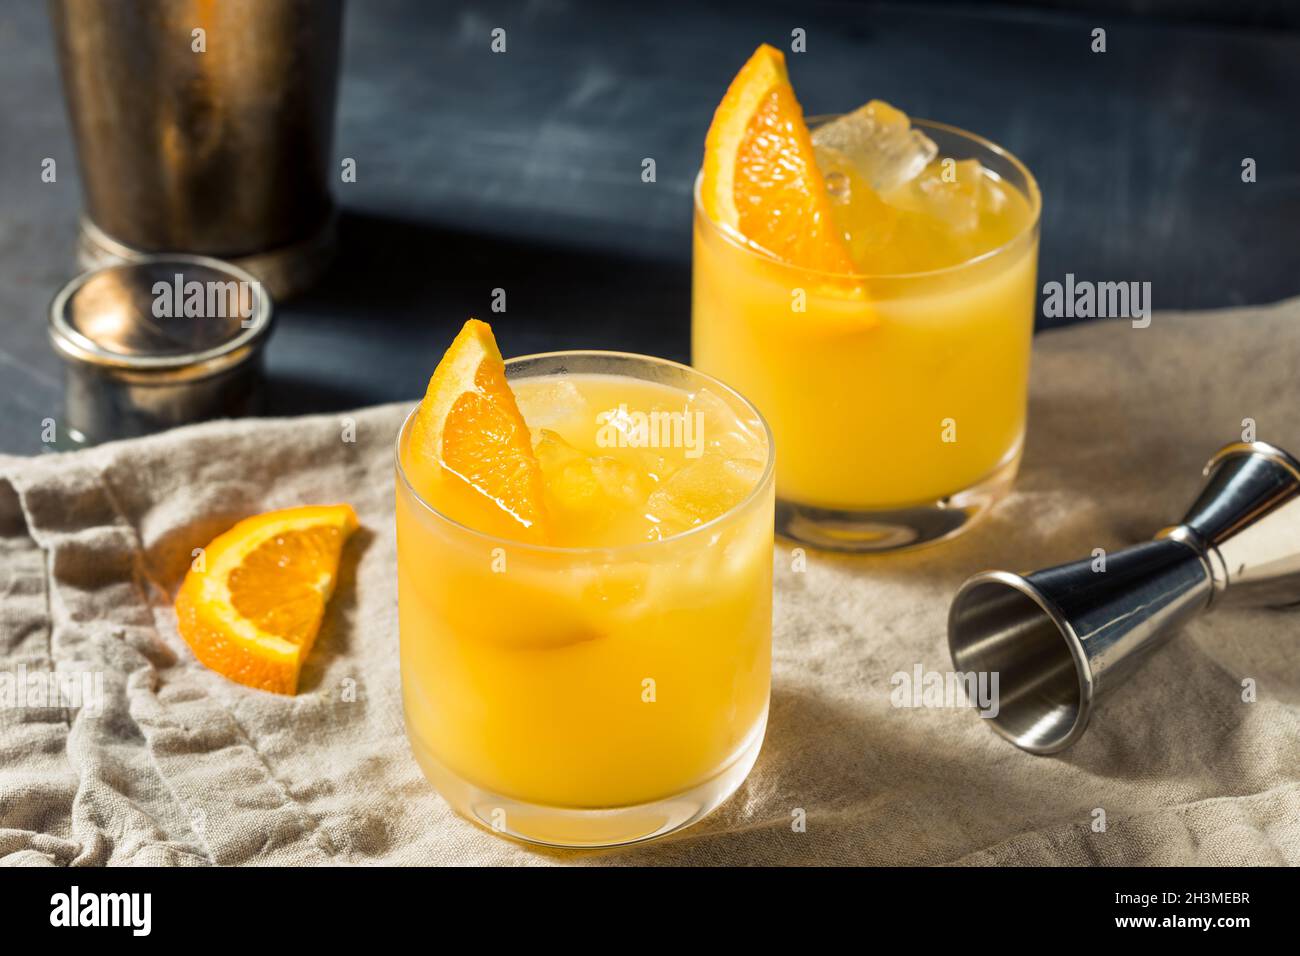 Cóctel de mono de con con zumo de naranja Fotografía de stock Alamy